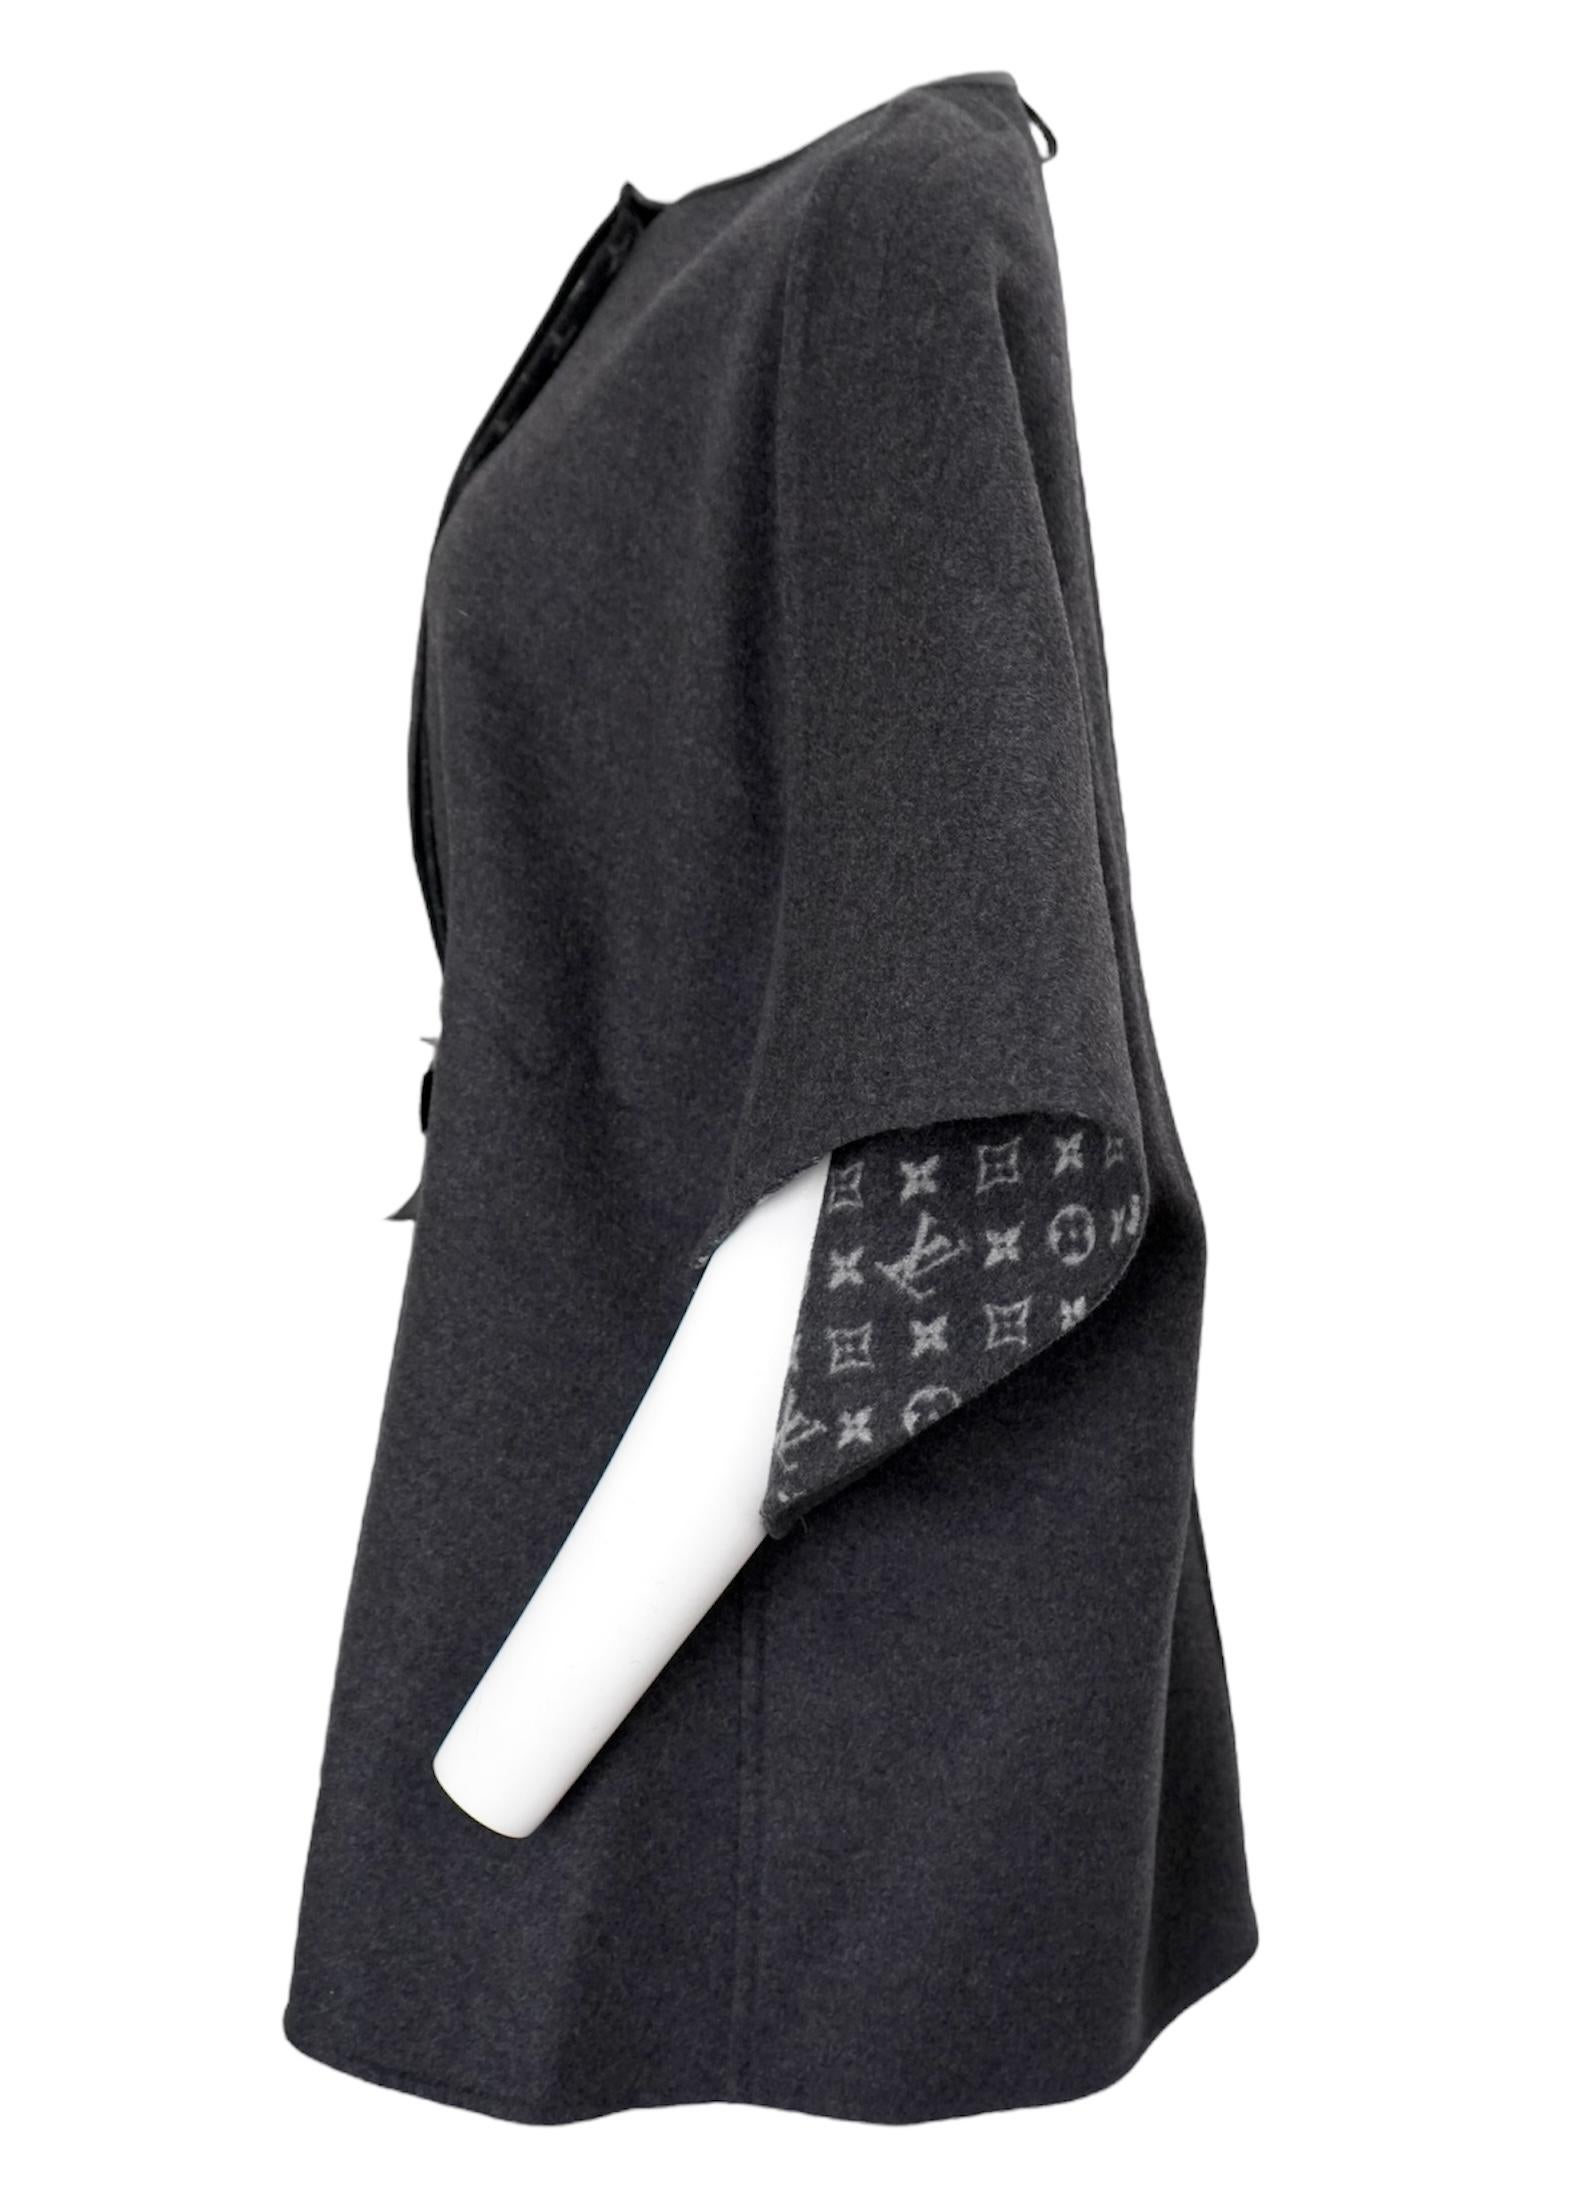 Le manteau cape Monogram de Louis Vuitton LV est un classique absolu de l'hiver.
Laine légère mais chaude et luxueuse (99%)
Laine, 1% soie). Extérieur gris uni et monogramme LV à l'intérieur. Ce manteau est doté d'une fermeture à boutons cachés et